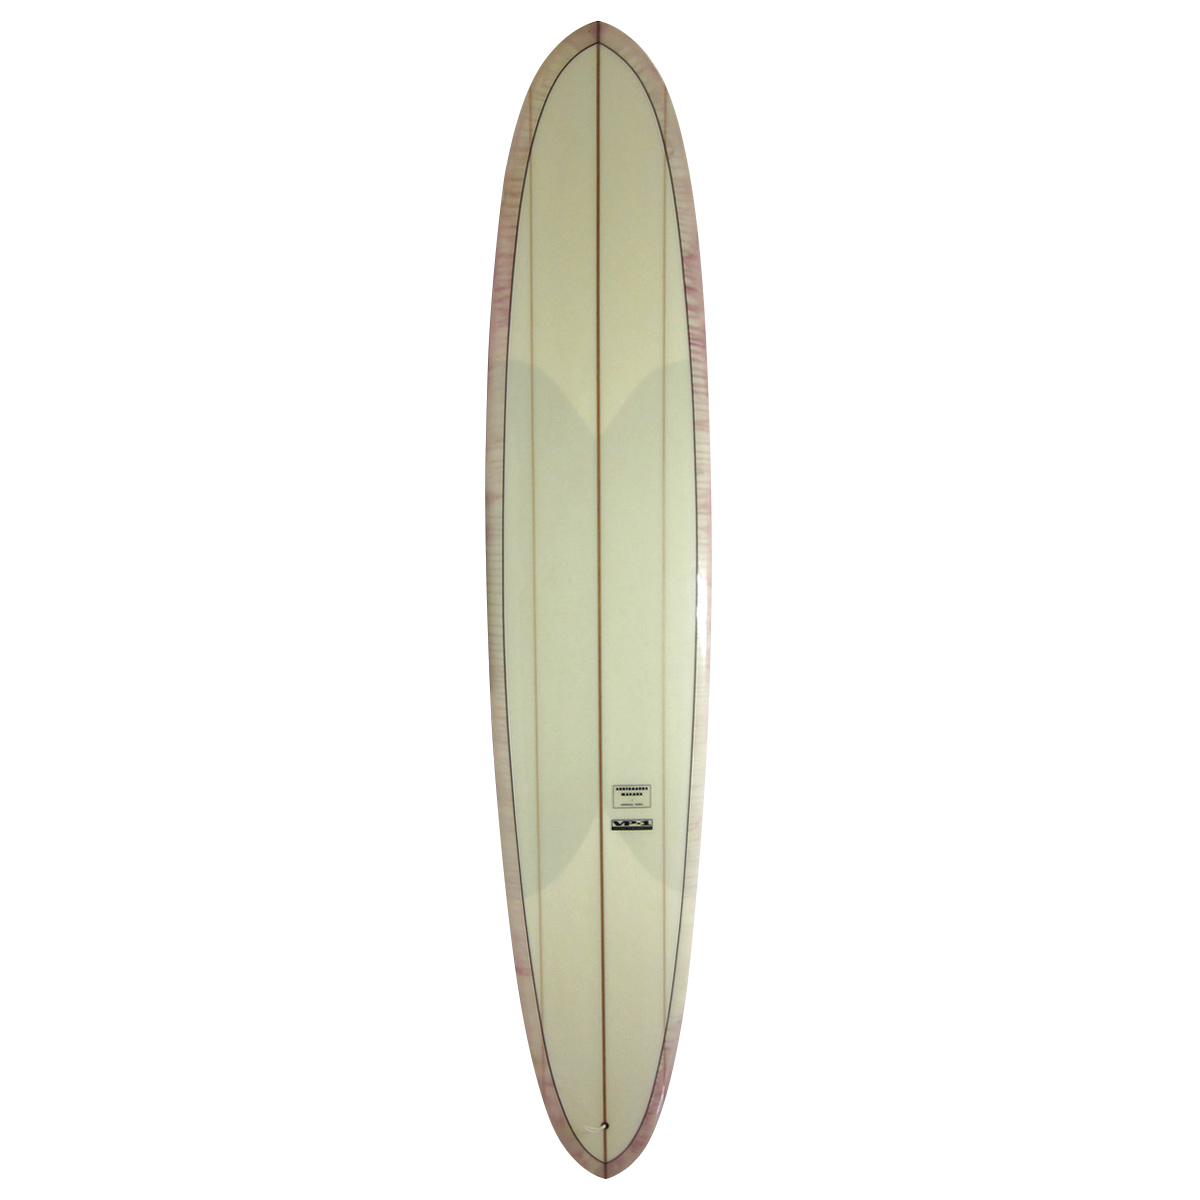  / SURFBOARDS MAKAHA  / Vintage Performance1 ClarkFoam